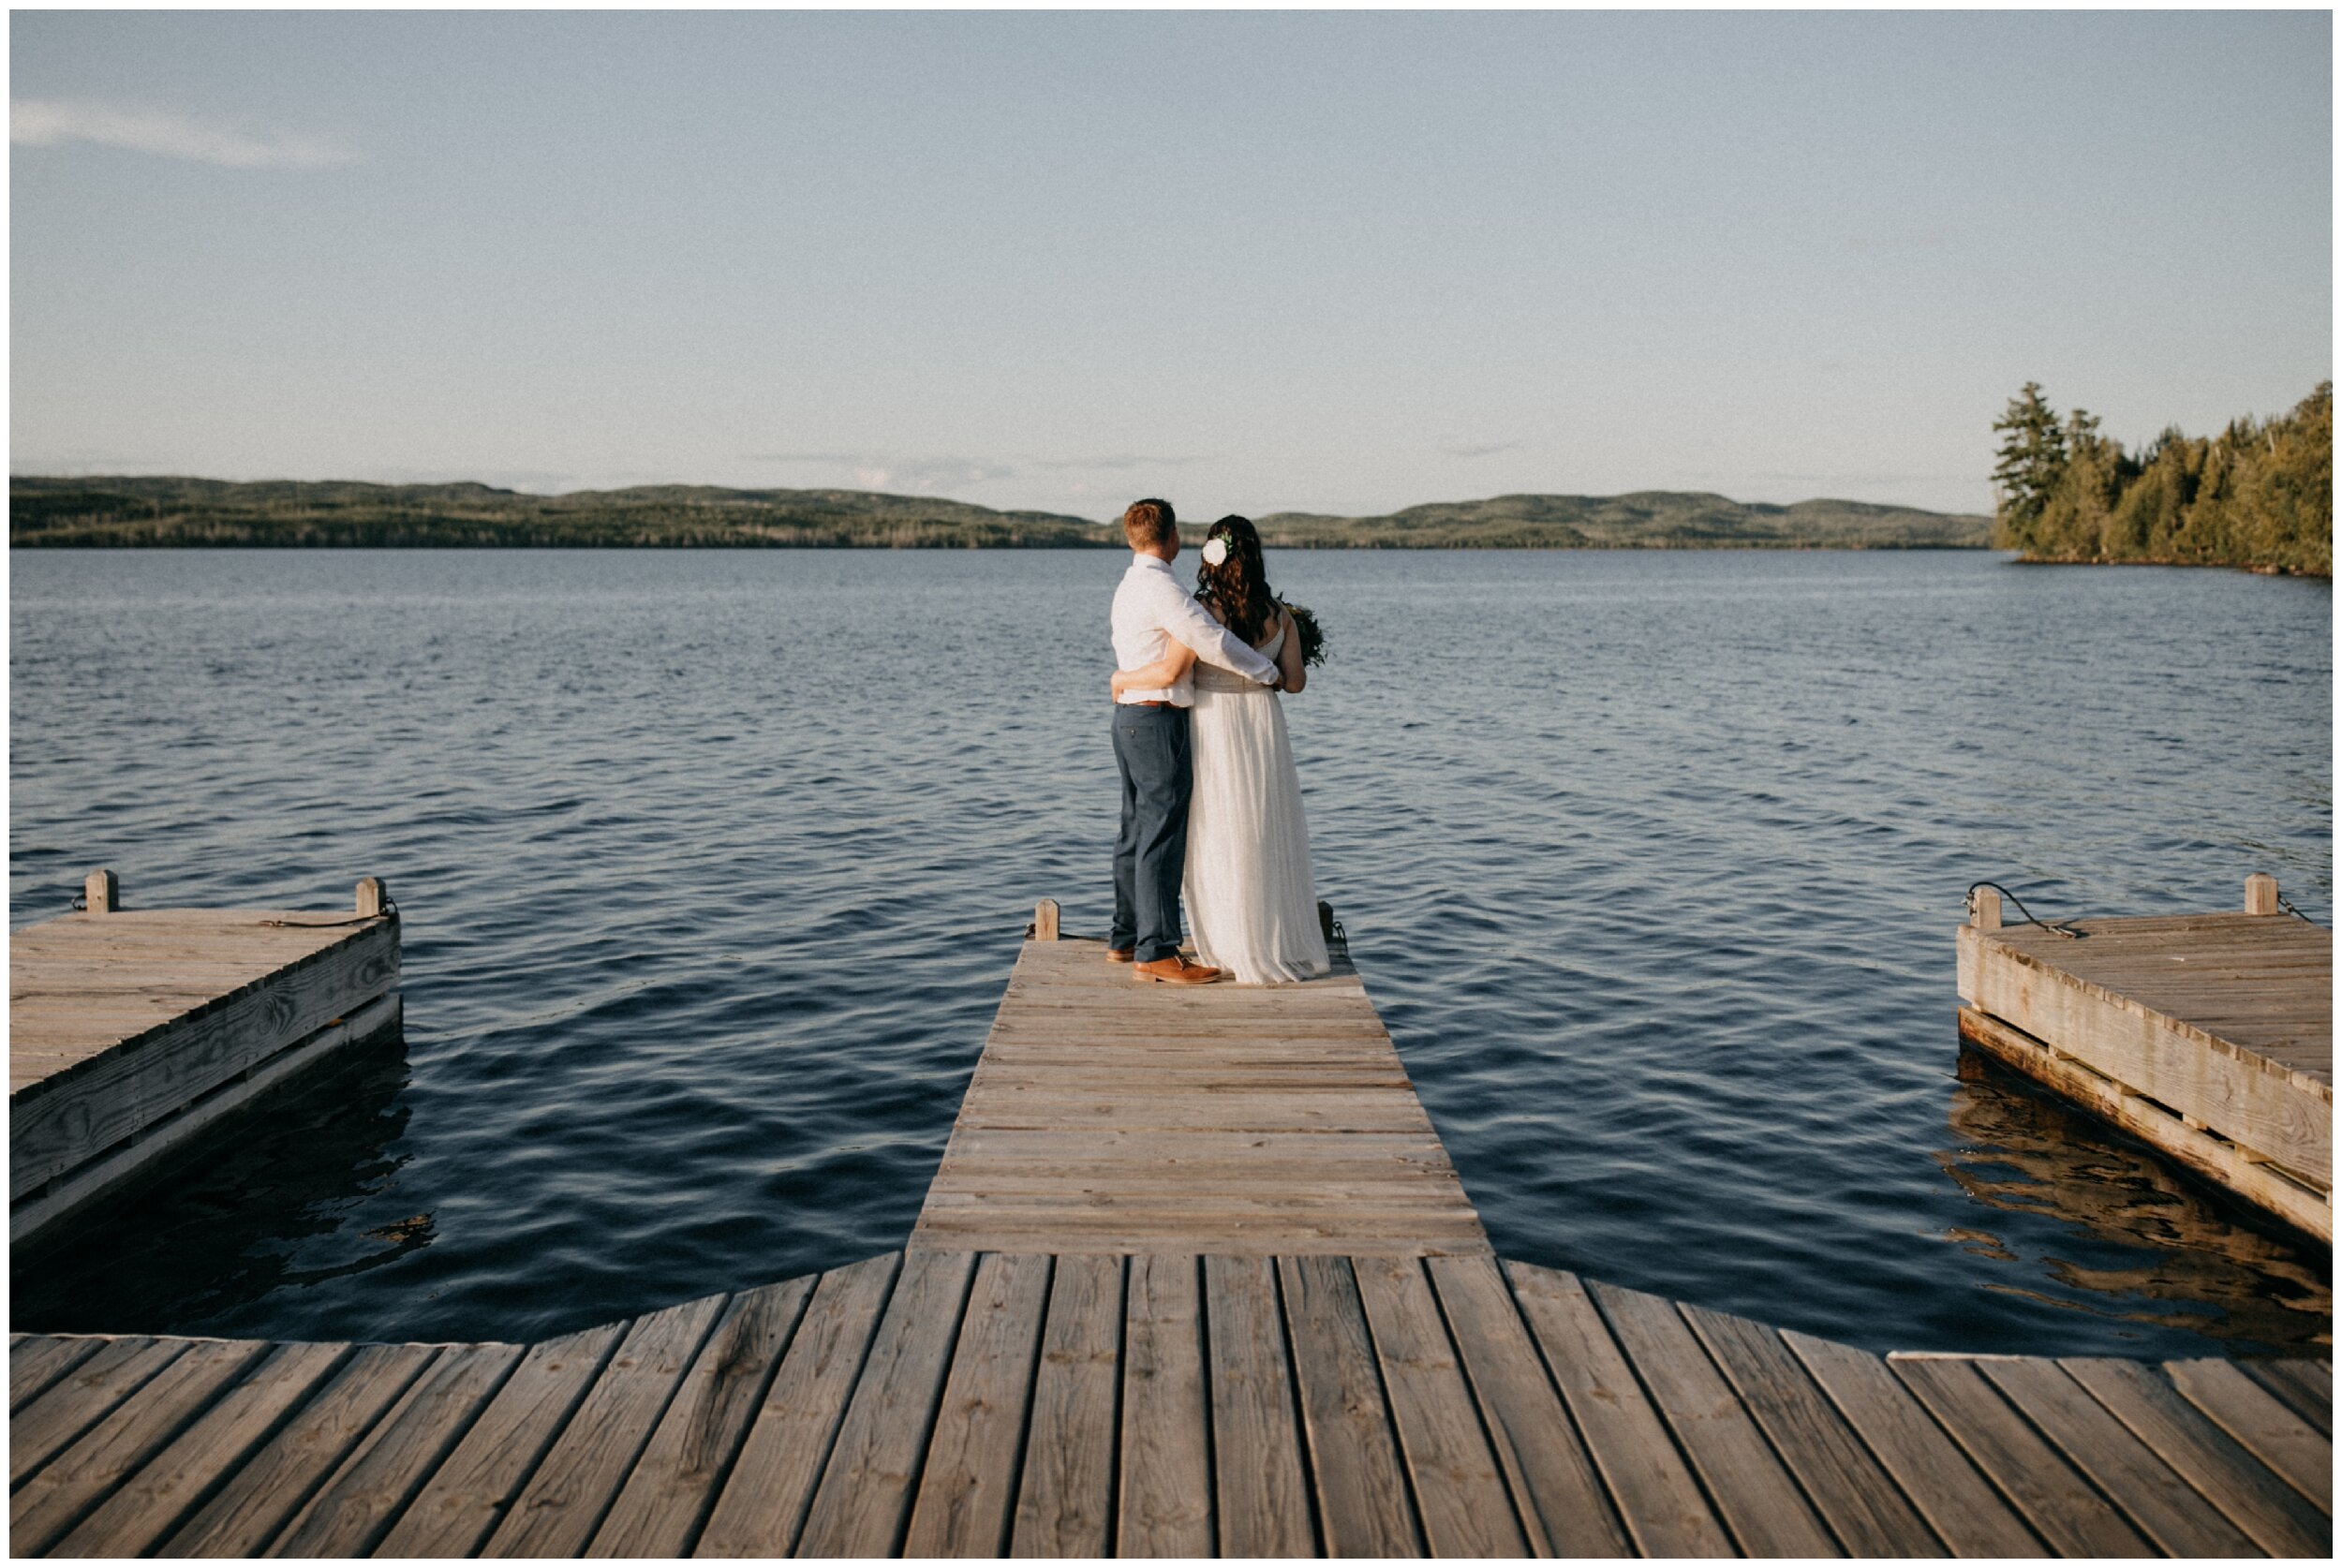 Northern Minnesota summer lakeside summer elopement wedding at Gunflint Lodge